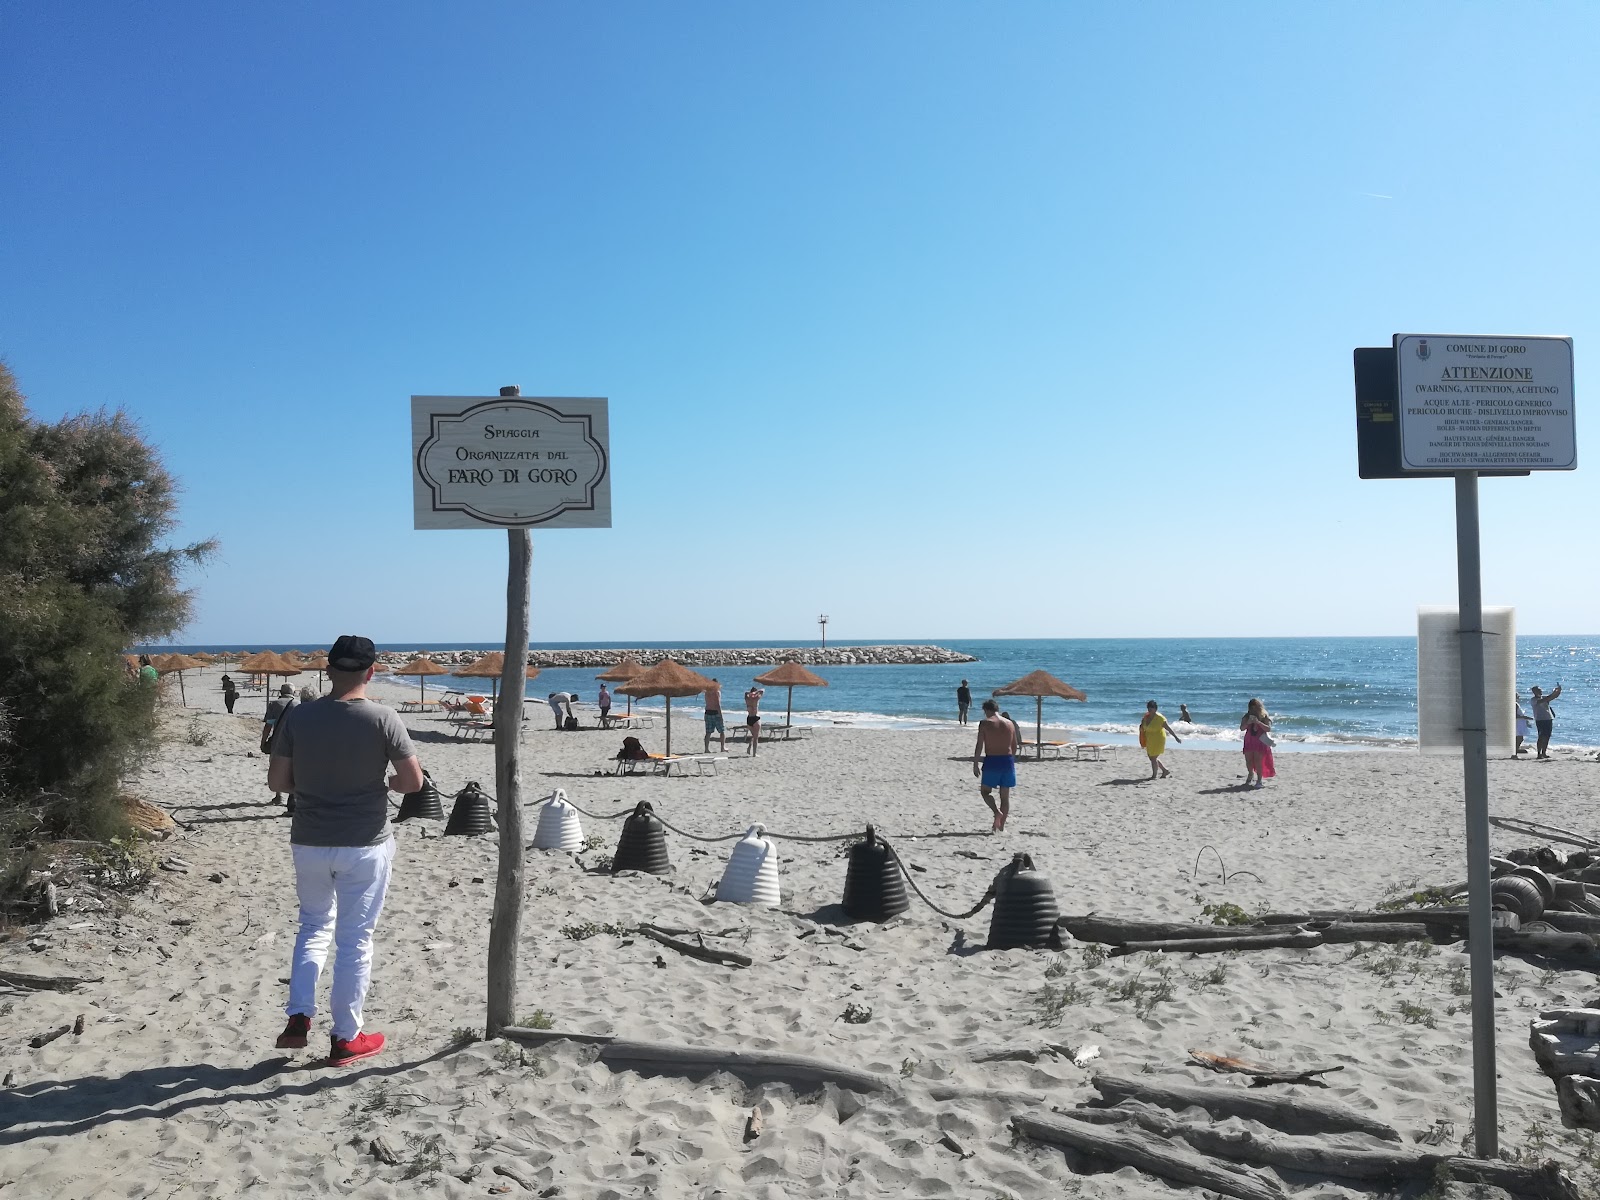 Foto av Spiaggia dell'Isola dell'Amore - populär plats bland avkopplingskännare